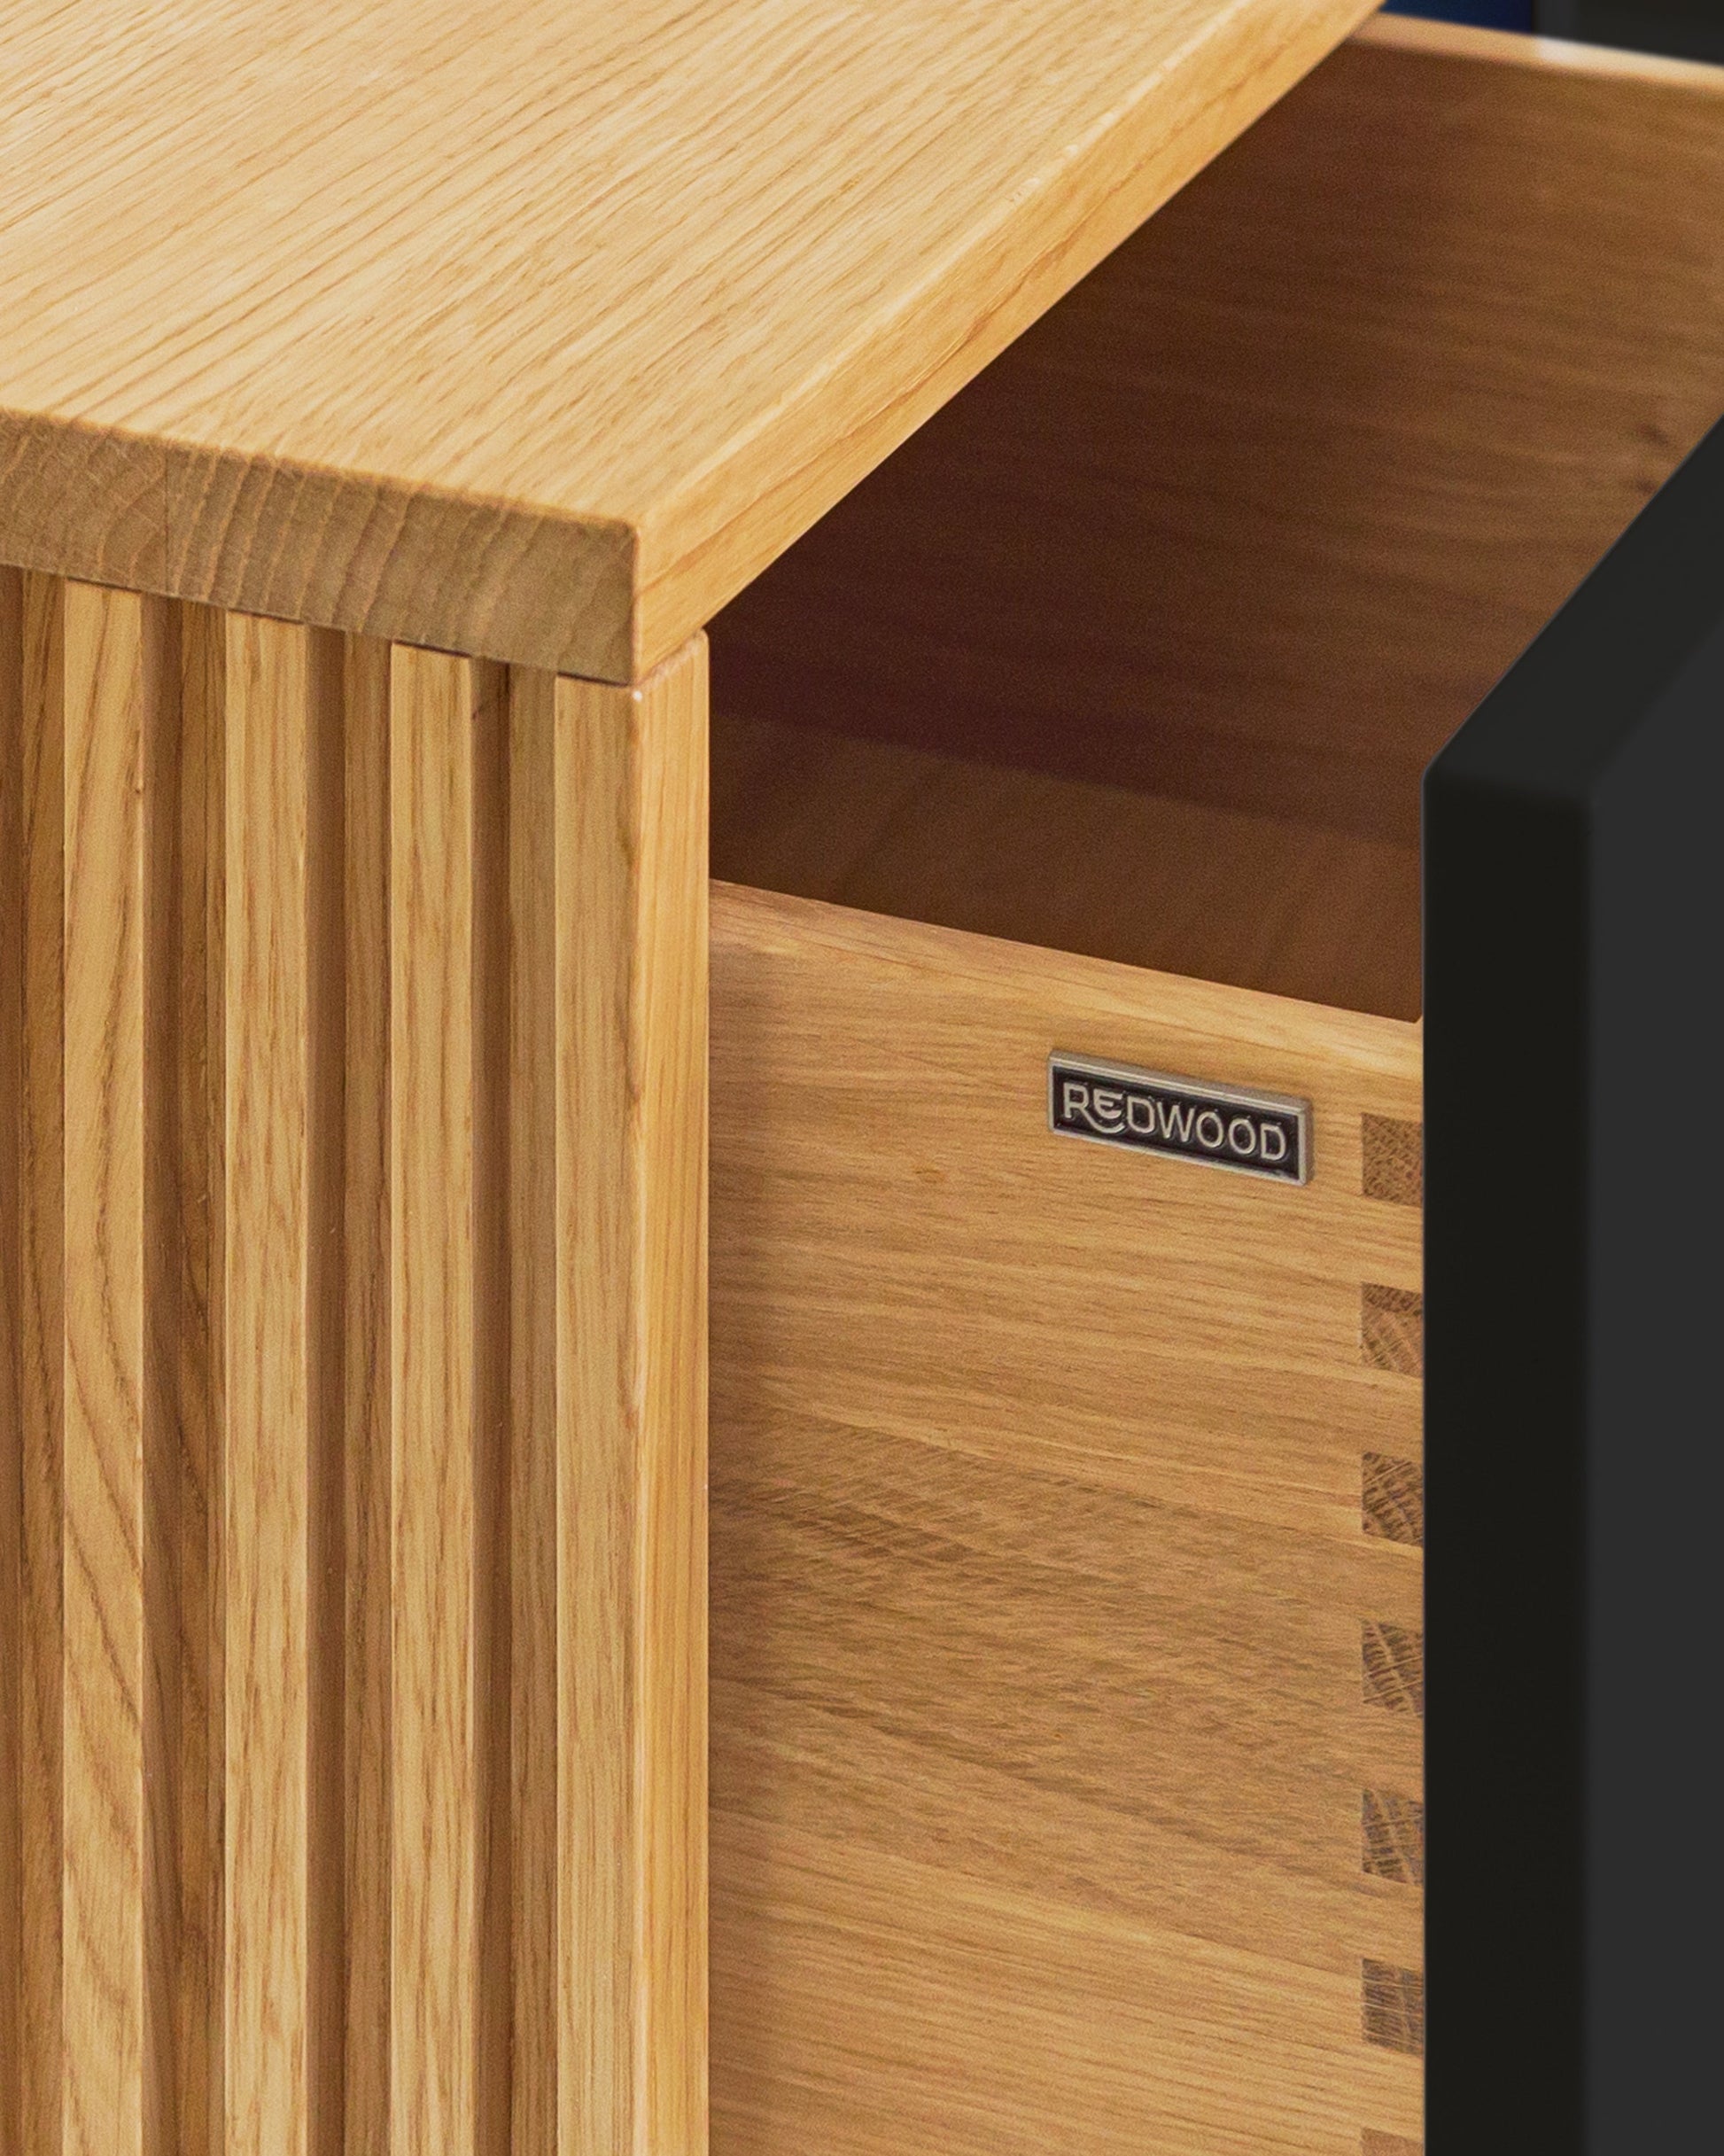 Sideboard in Eiche schwarz:Schubladen in Massivholz:Die Verwendung von Massivholz für die Schubladen und die unterseitige (also nicht sichtbare) Befestigung der Auszüge sorgen nicht nur für ein hochwertiges Design, sondern auch für maximale Stabilität und Langlebigkeit.